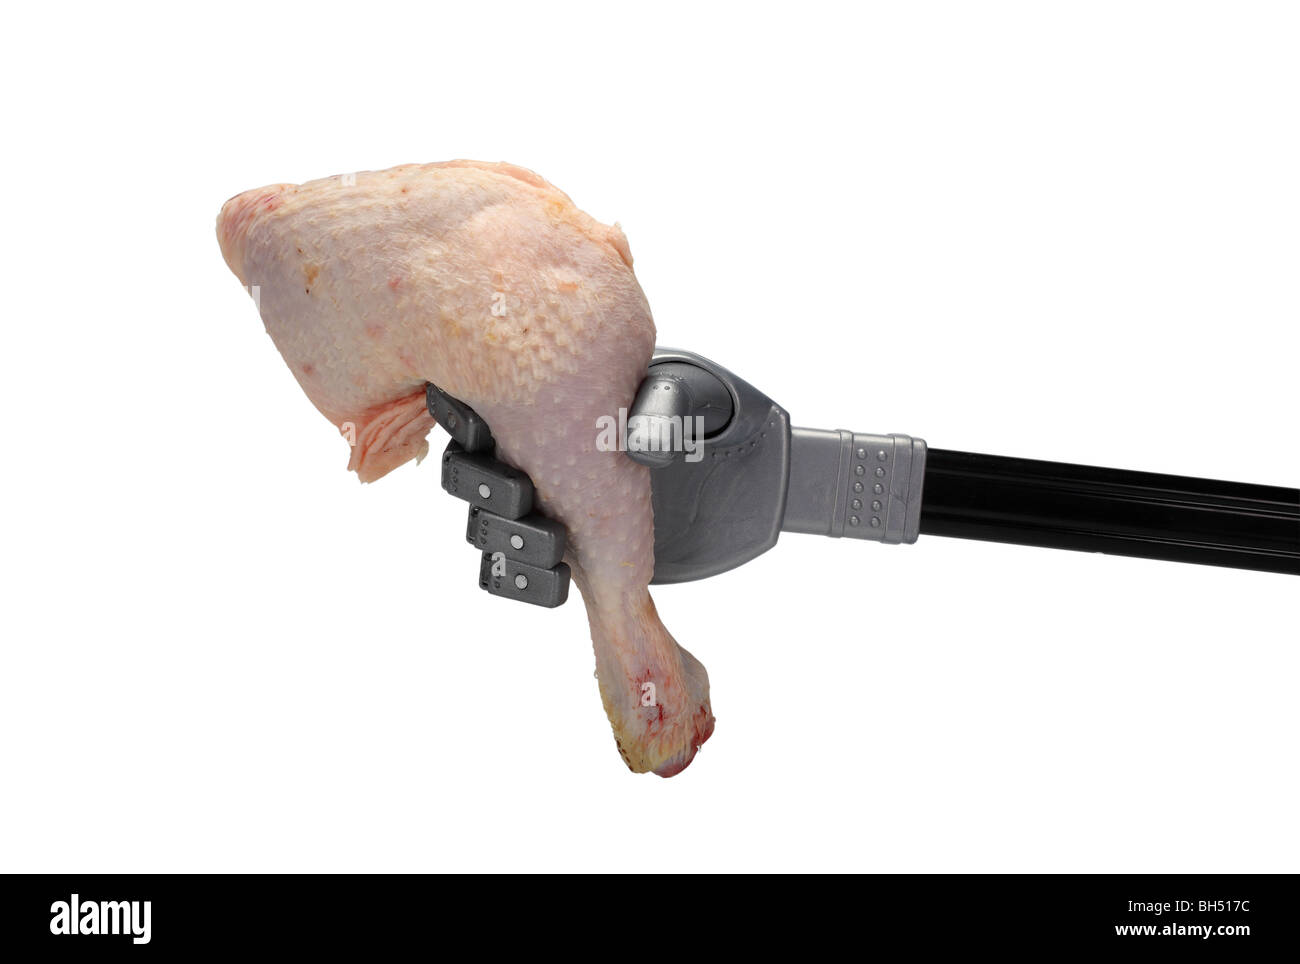 Roboter rohem Hühnerfleisch Bein Trommelstock Vorbereitung Essen hungernden Proteinen Fleisch Lebensmittel Beine Fleischhühner essen rohes Geflügel greifen Hand Stockfoto